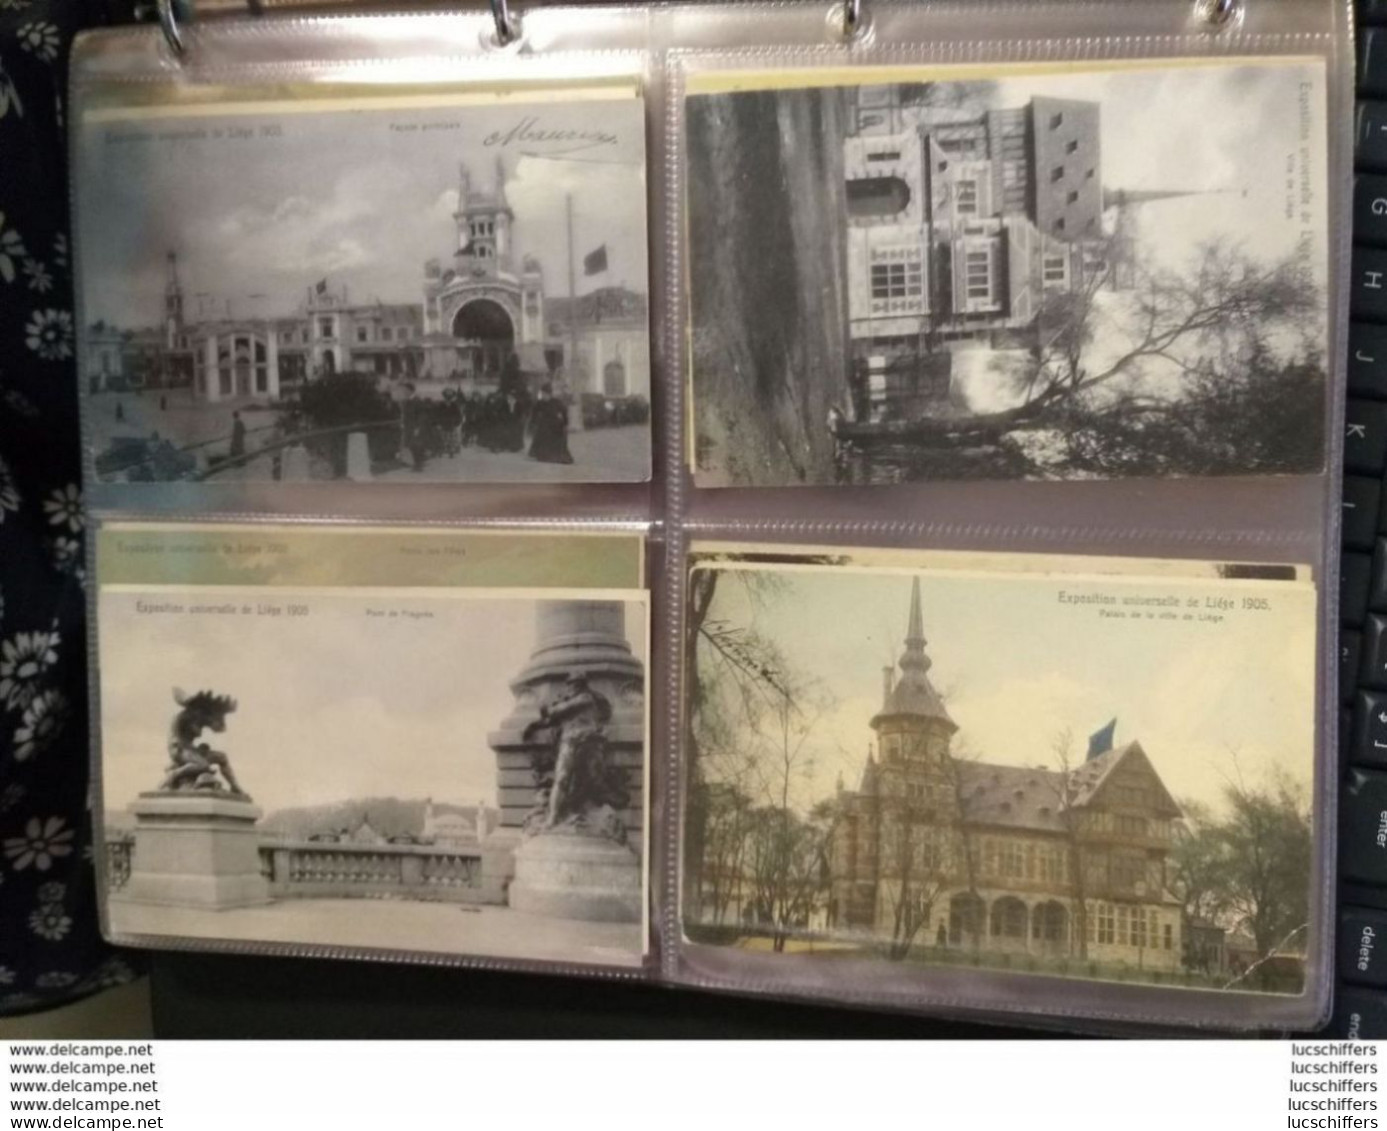 Exposition universelle de 1905 - Liège - Série Nels numérotée - Je vends ma collection -